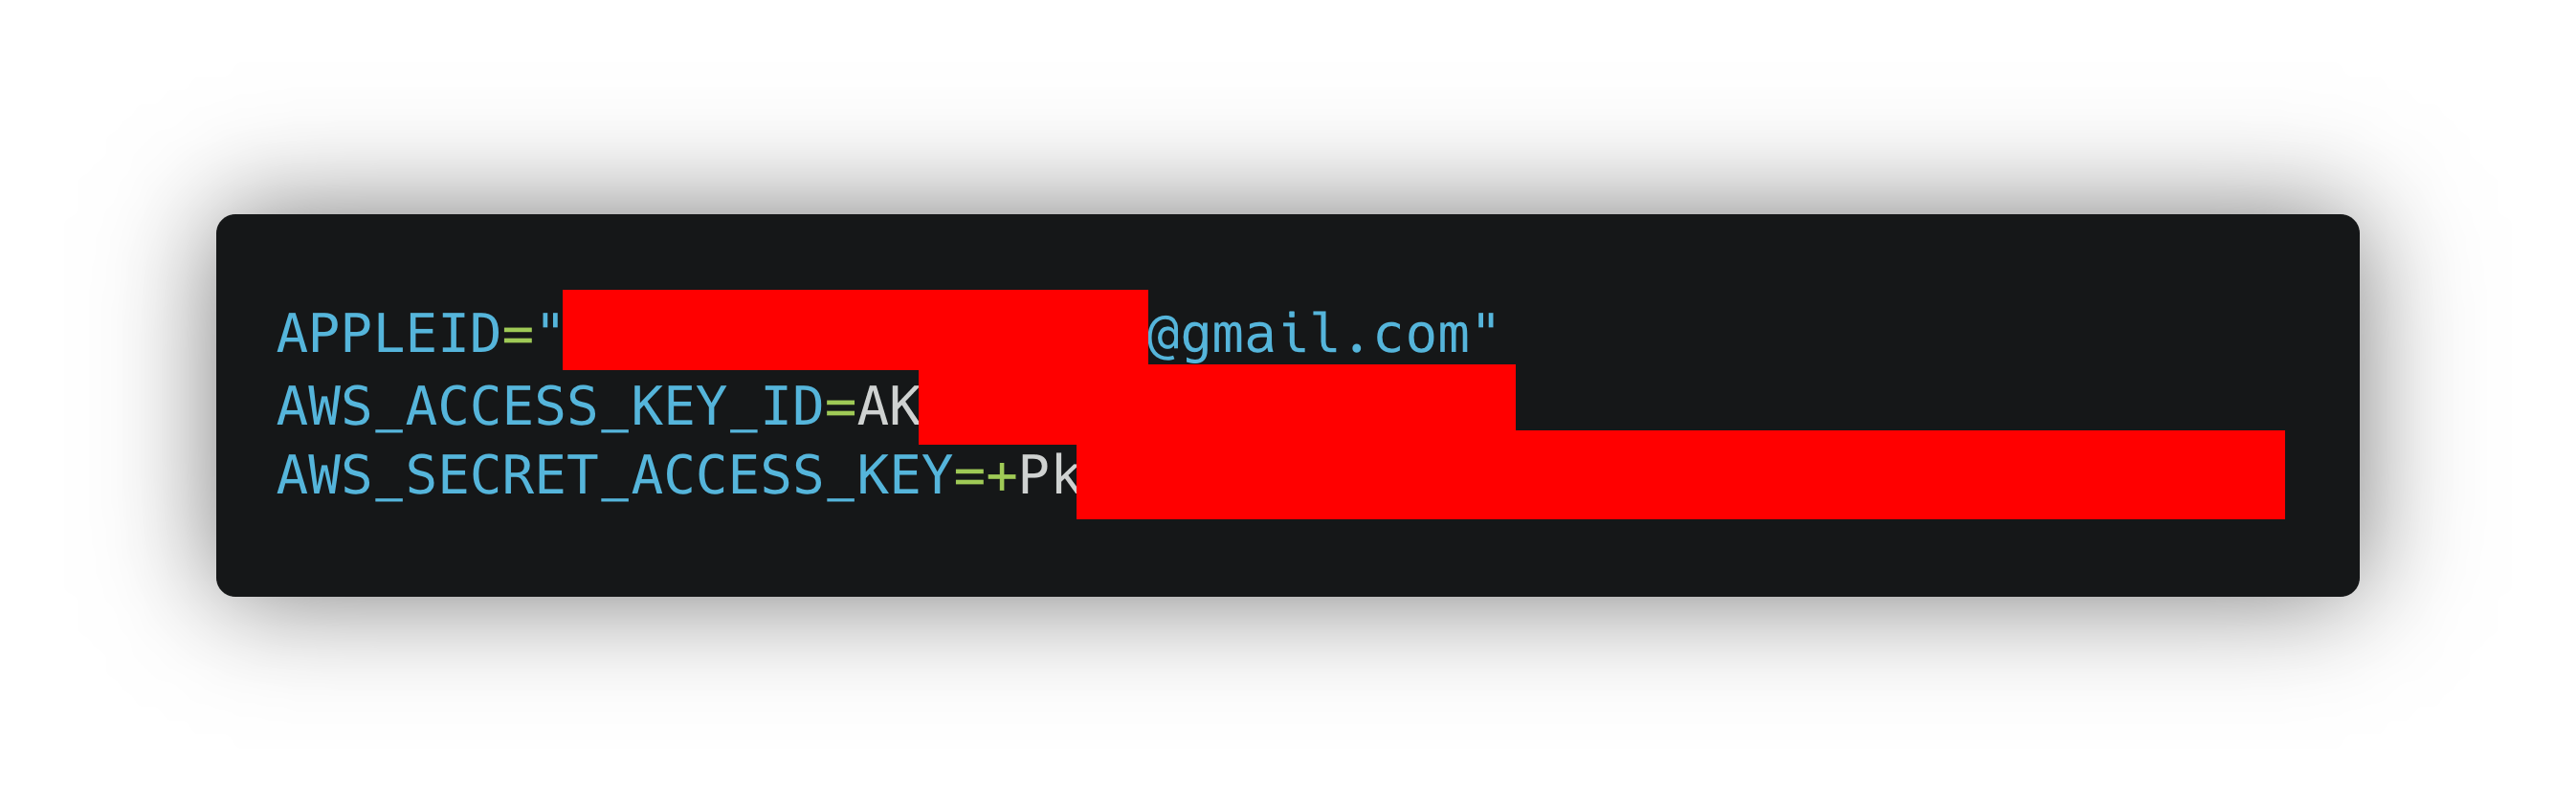 Inhalt der .env Datei, darin zu erkennen eine Gmail-Adresse als Apple-ID und ein AWS Secret Access Key